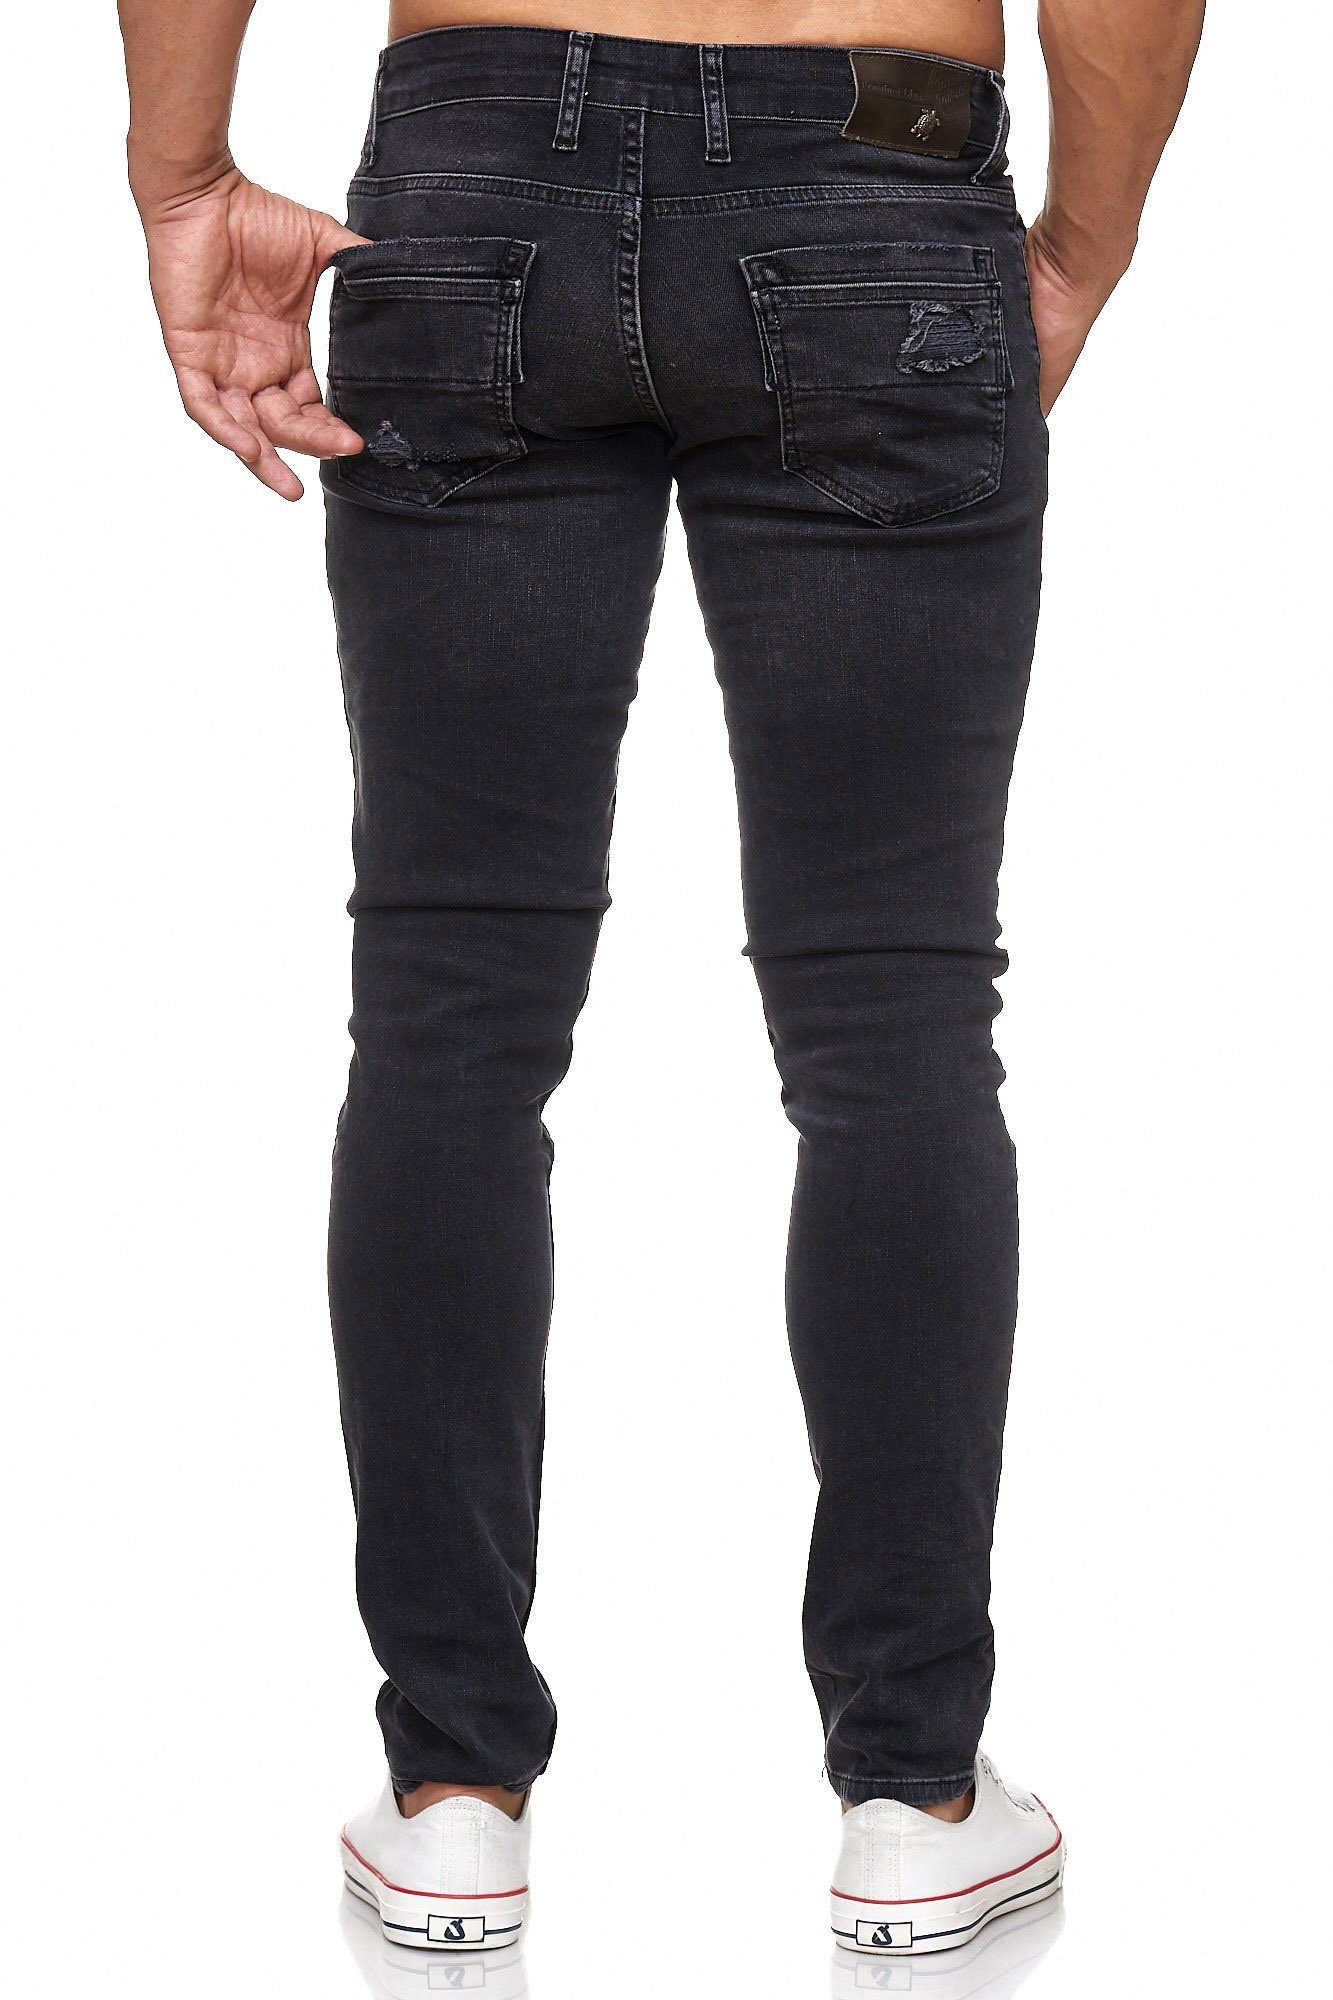 Tazzio Slim-fit-Jeans im Destroyed-Look 17502 schwarz